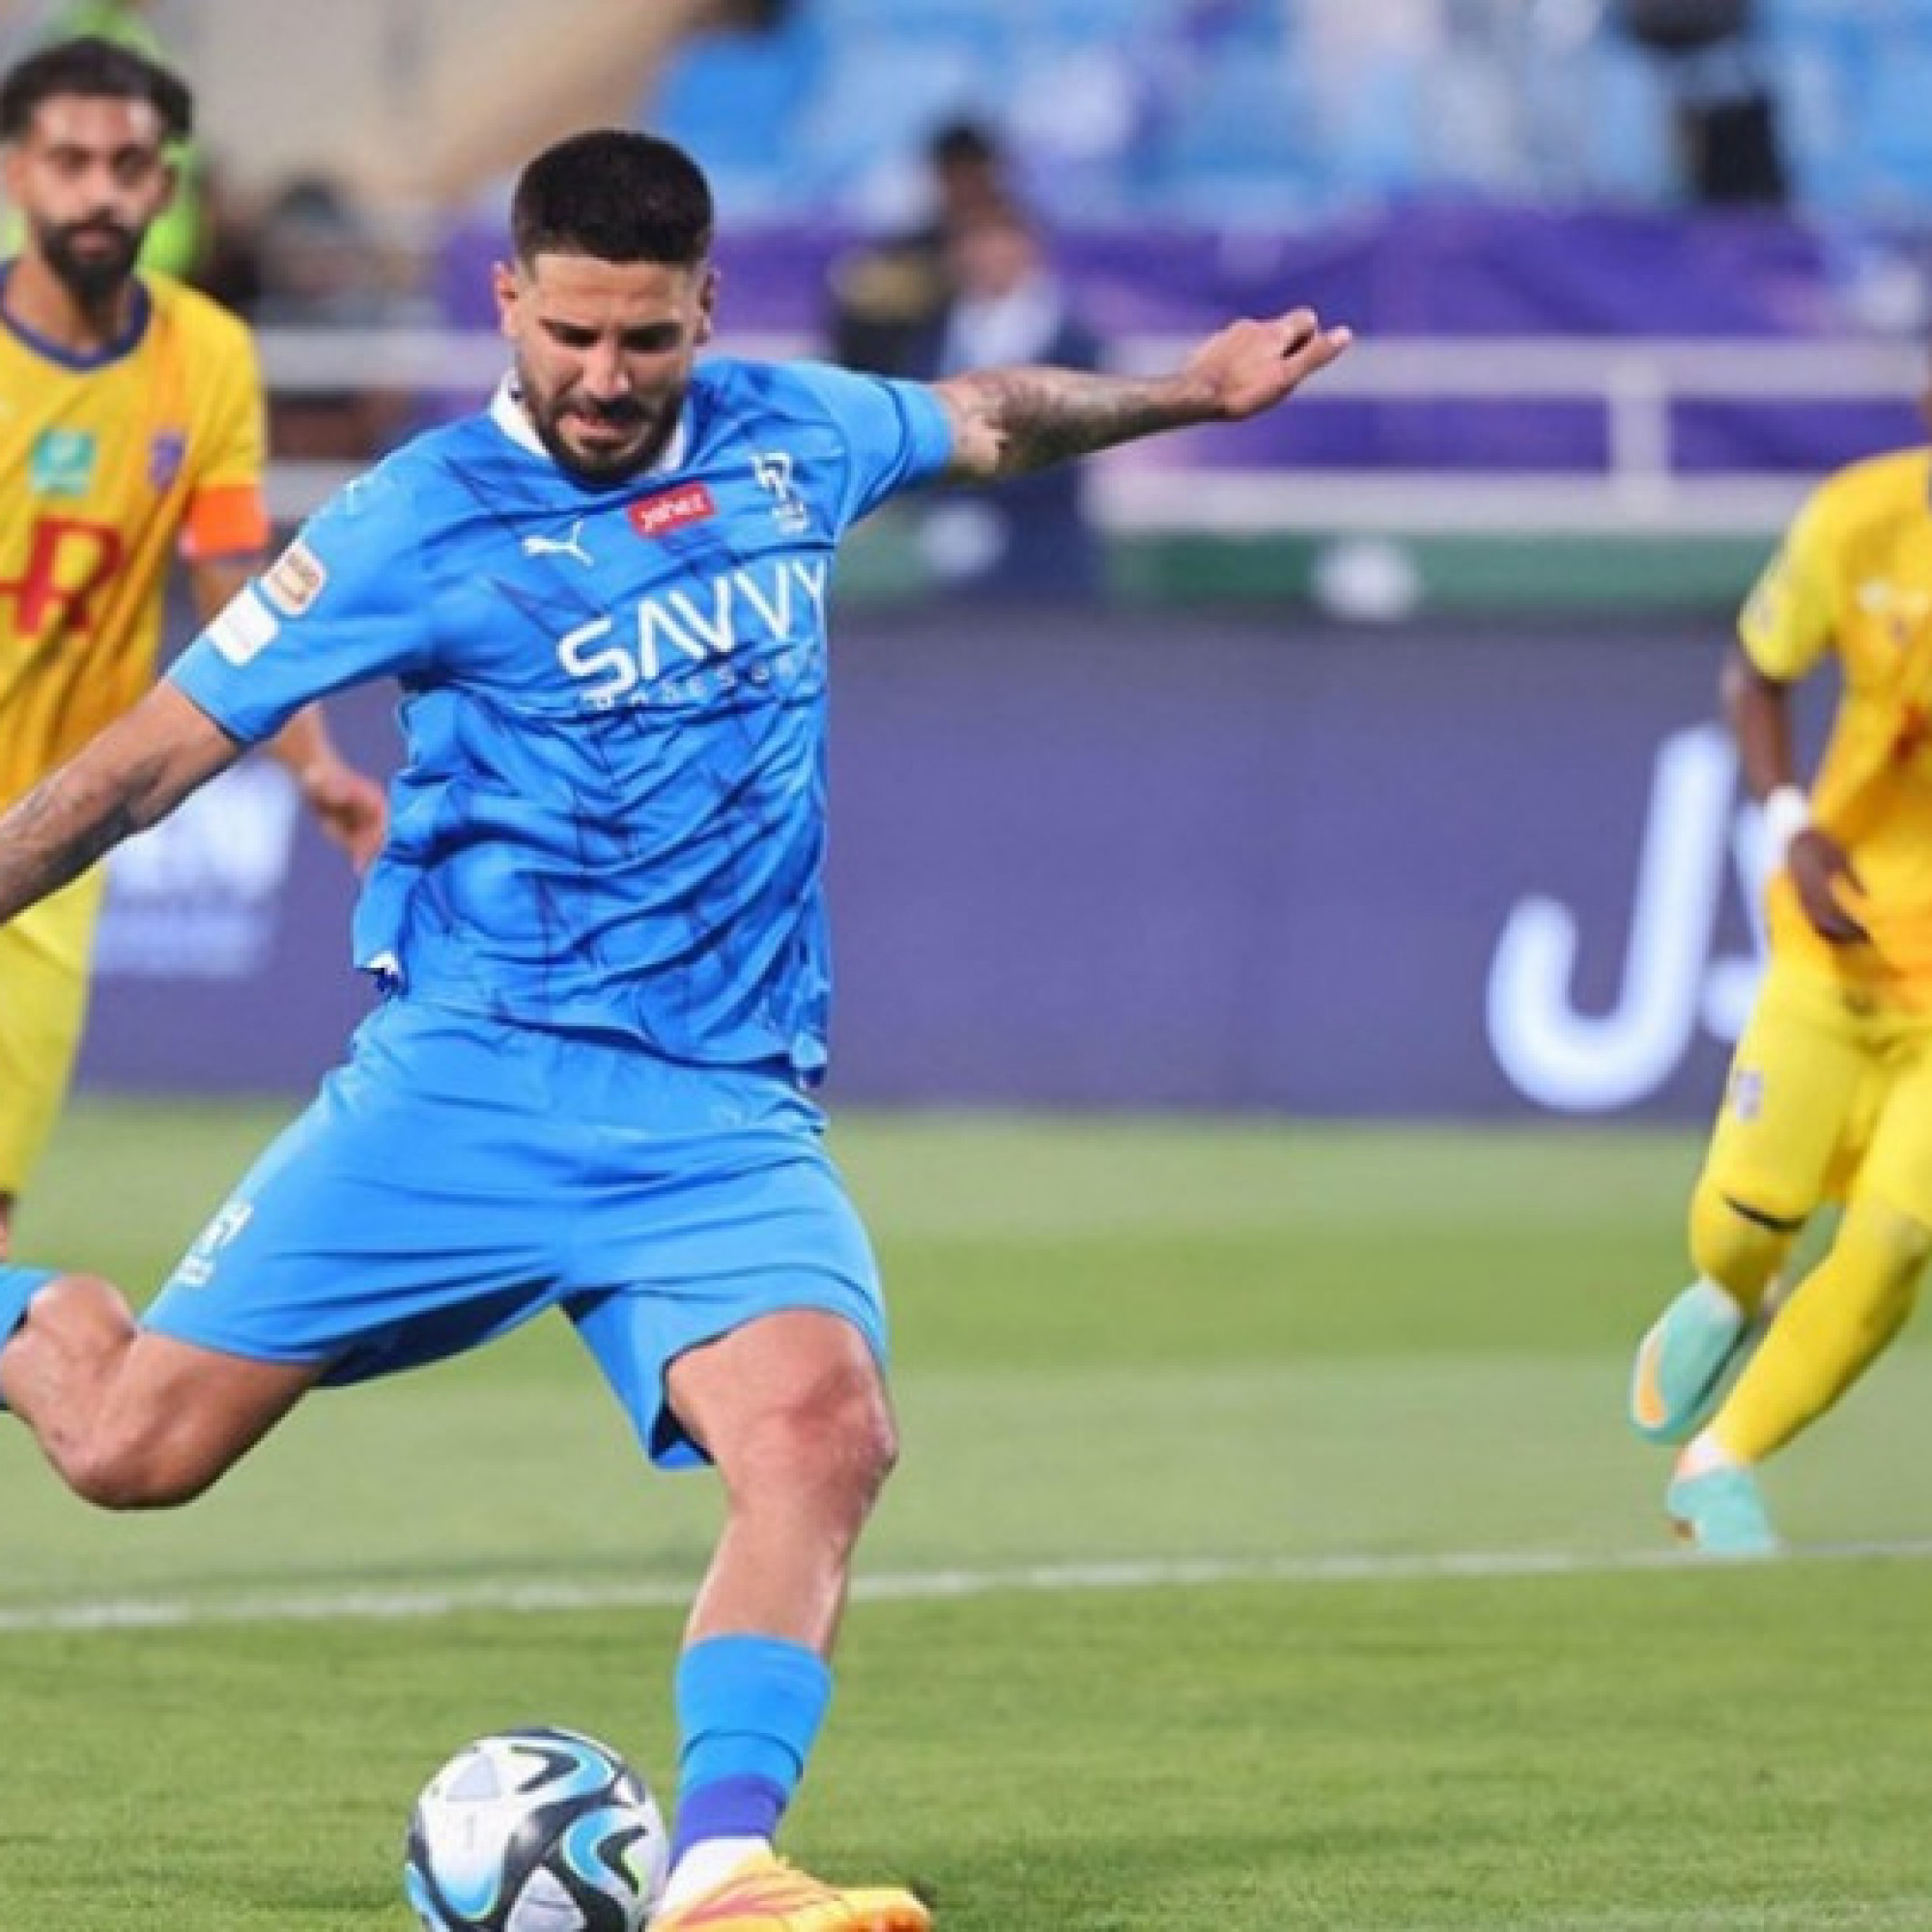  - Video bóng đá Al Hilal - Al Hazm: Bùng nổ hiệp 1, Ronaldo hết cơ hội (Saudi Pro League)